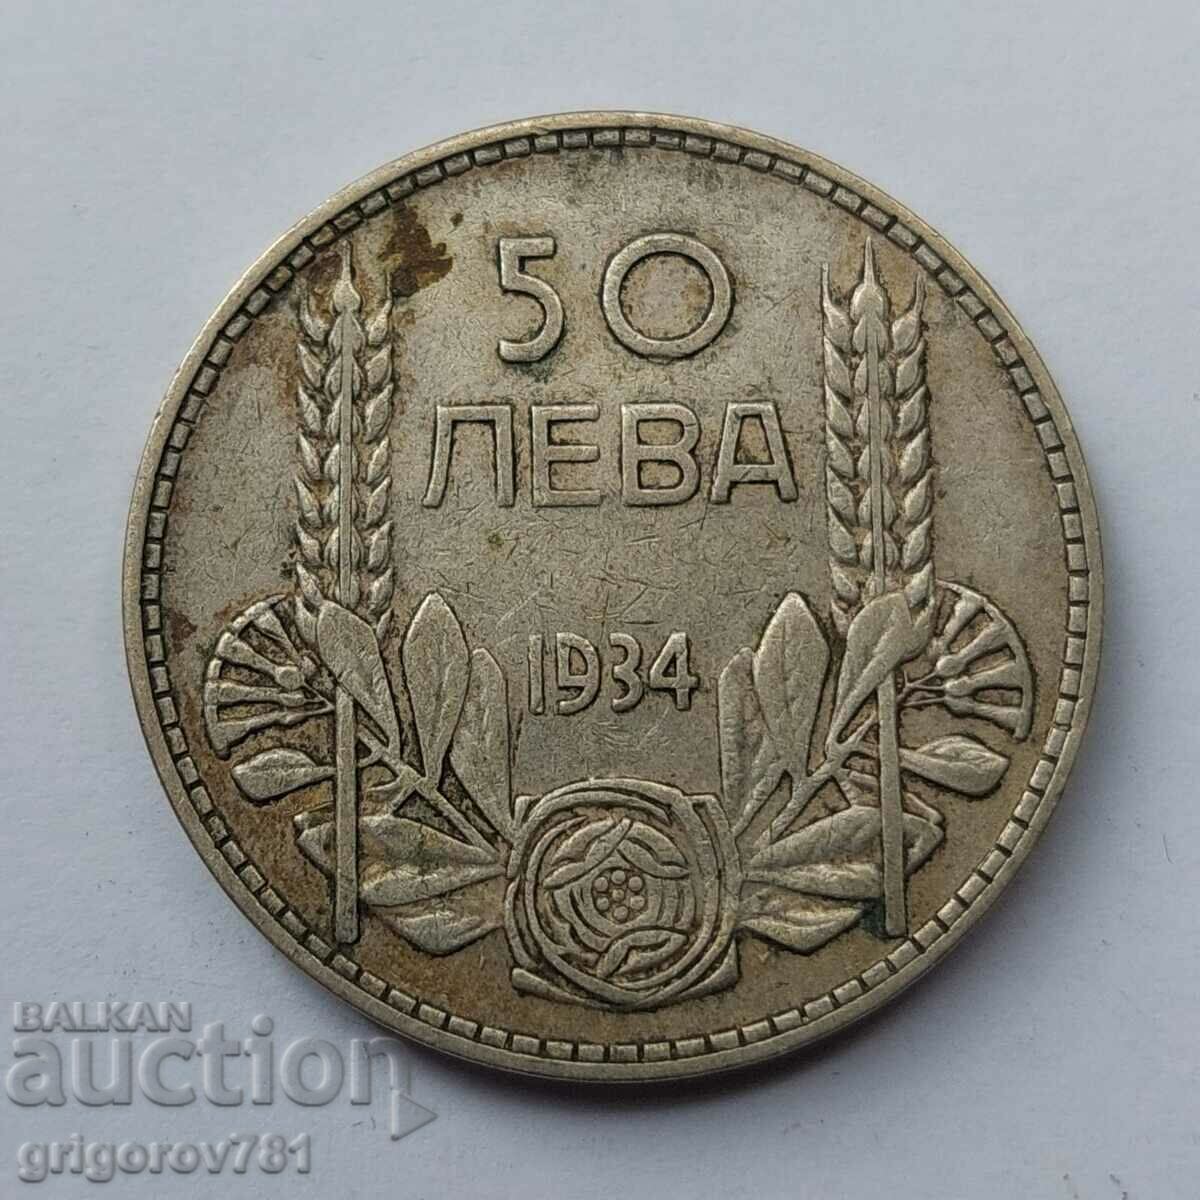 Ασήμι 50 λέβα Βουλγαρία 1934 - ασημένιο νόμισμα #94